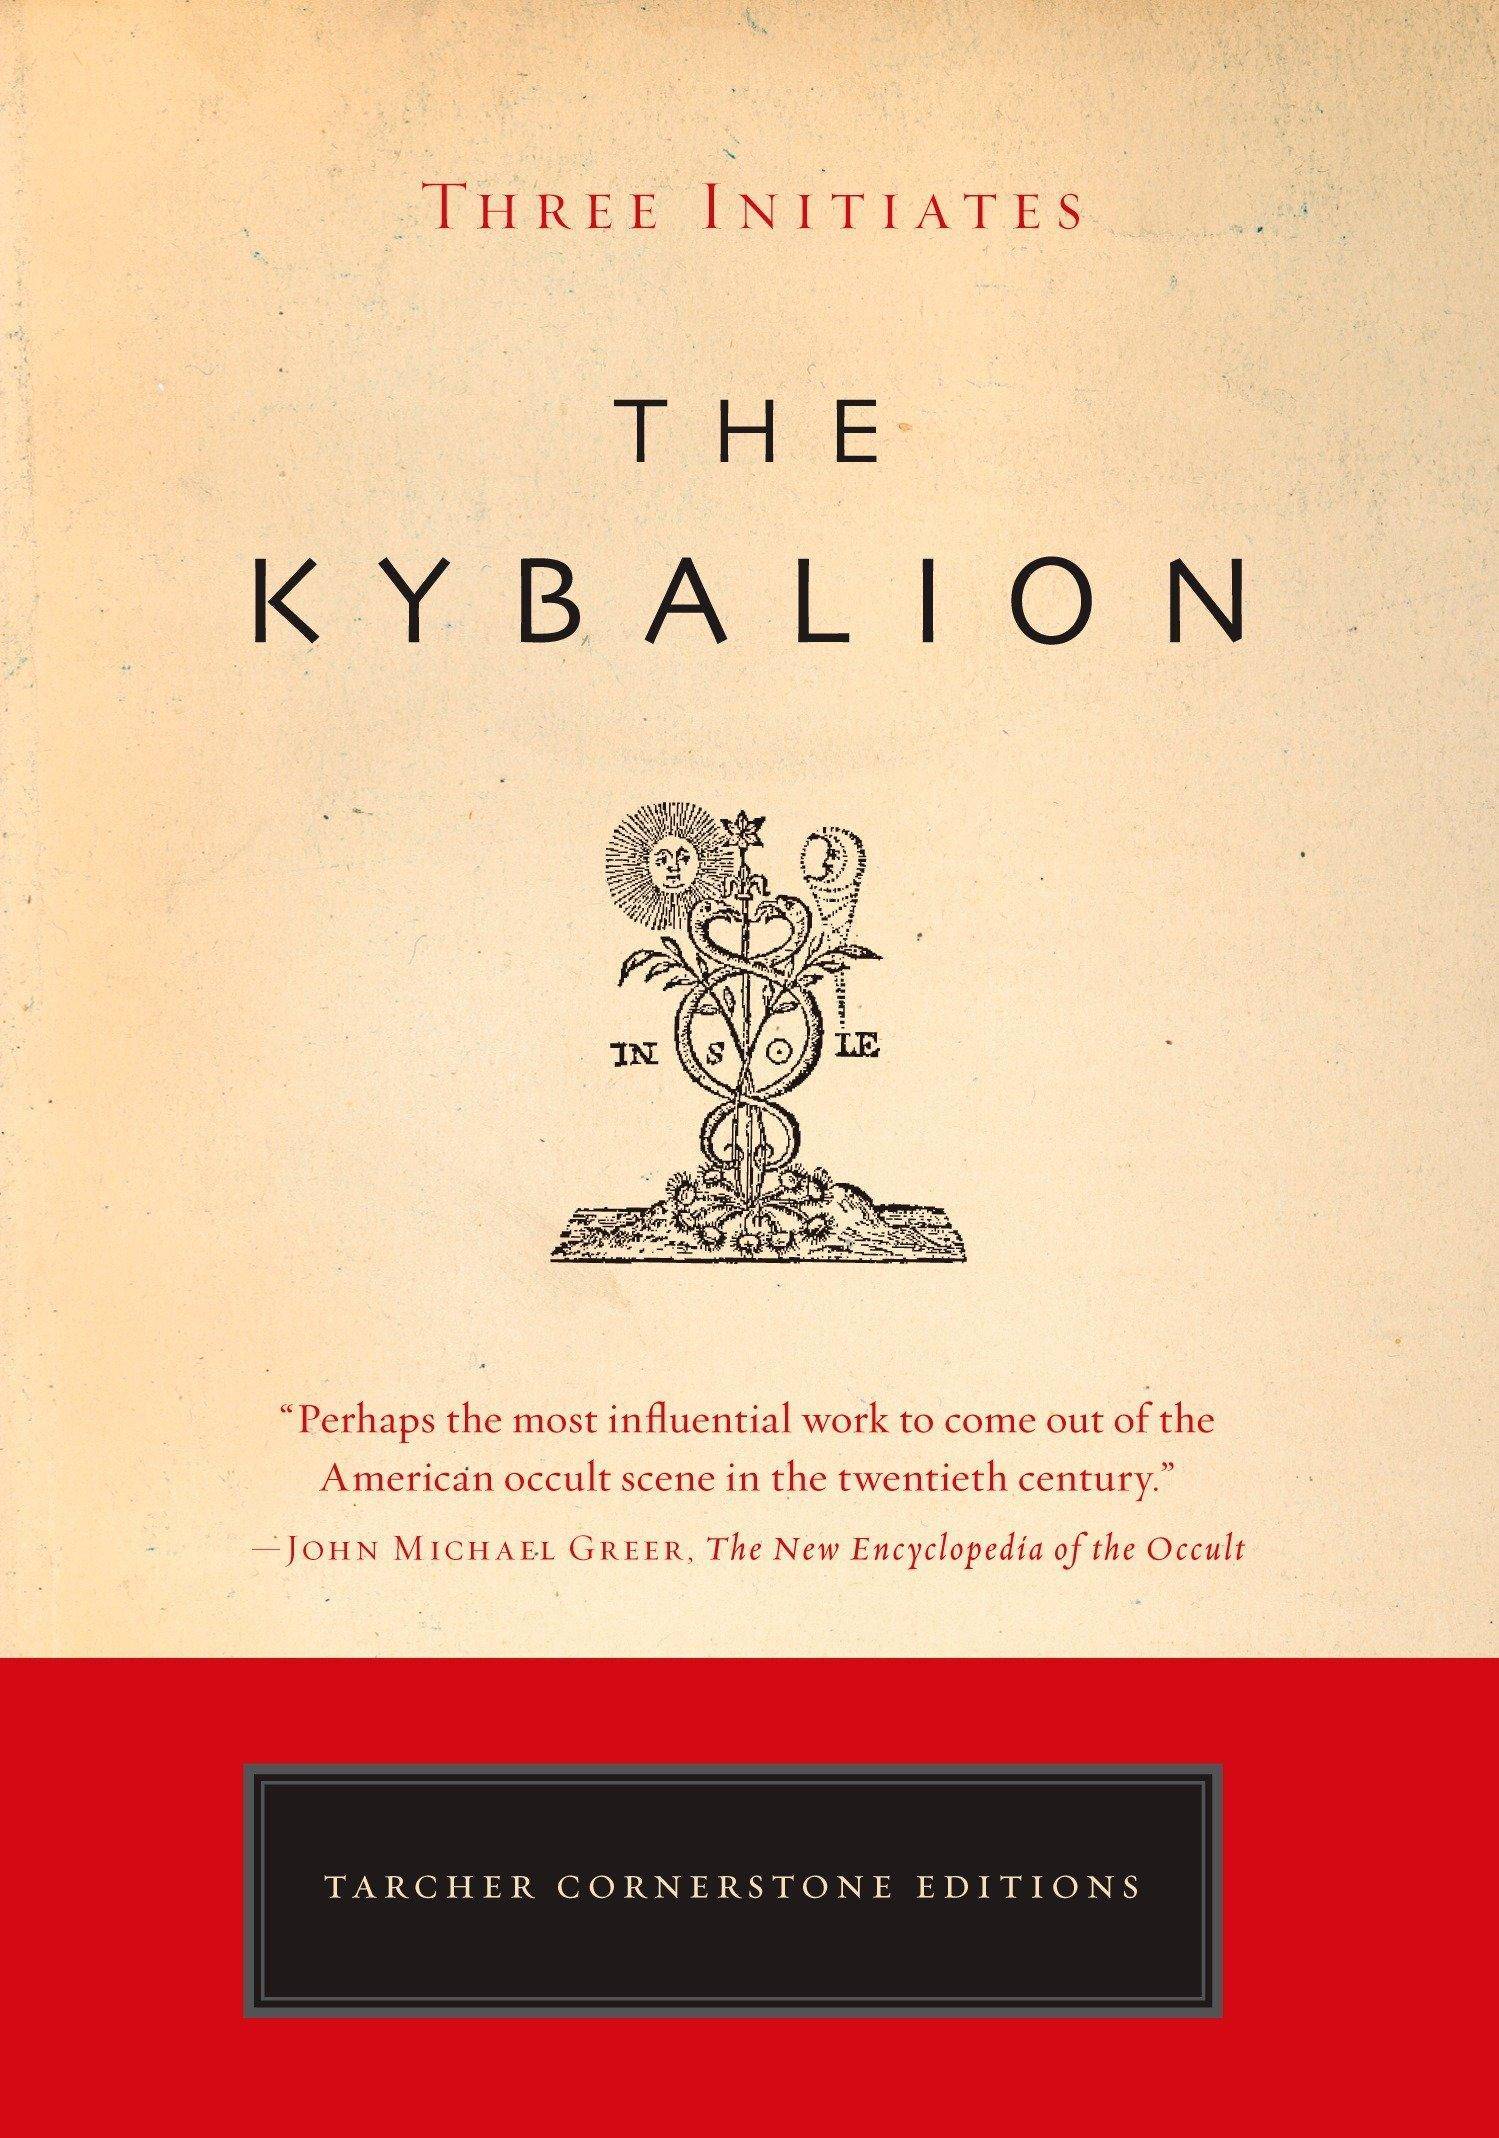 The Kybalion - SureShot Books Publishing LLC